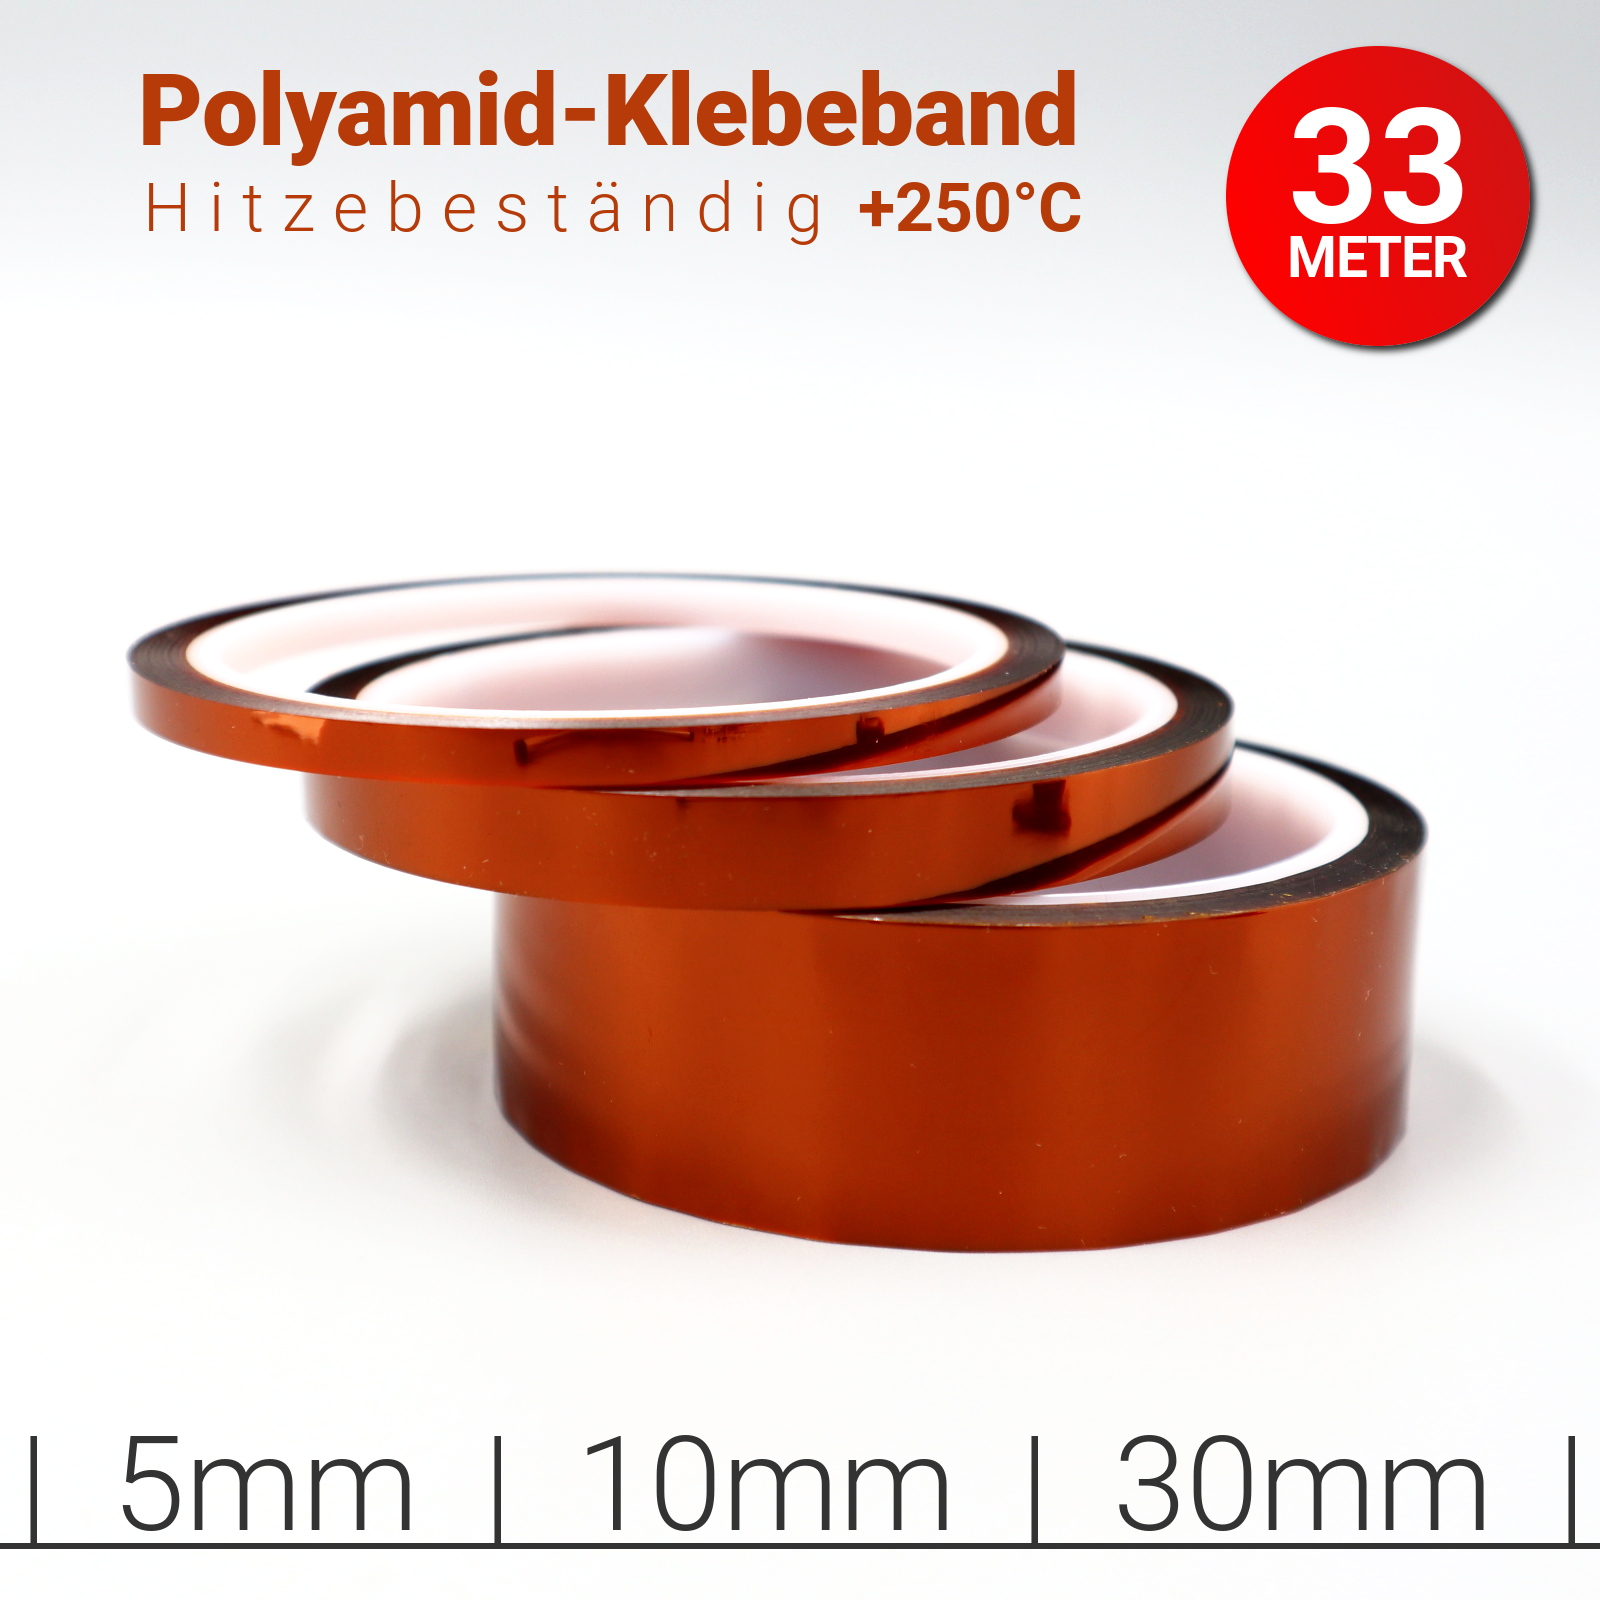 HQ Hitzebeständiges Polyimid Klebeband - 33m Tape - RetroReiZ Shop